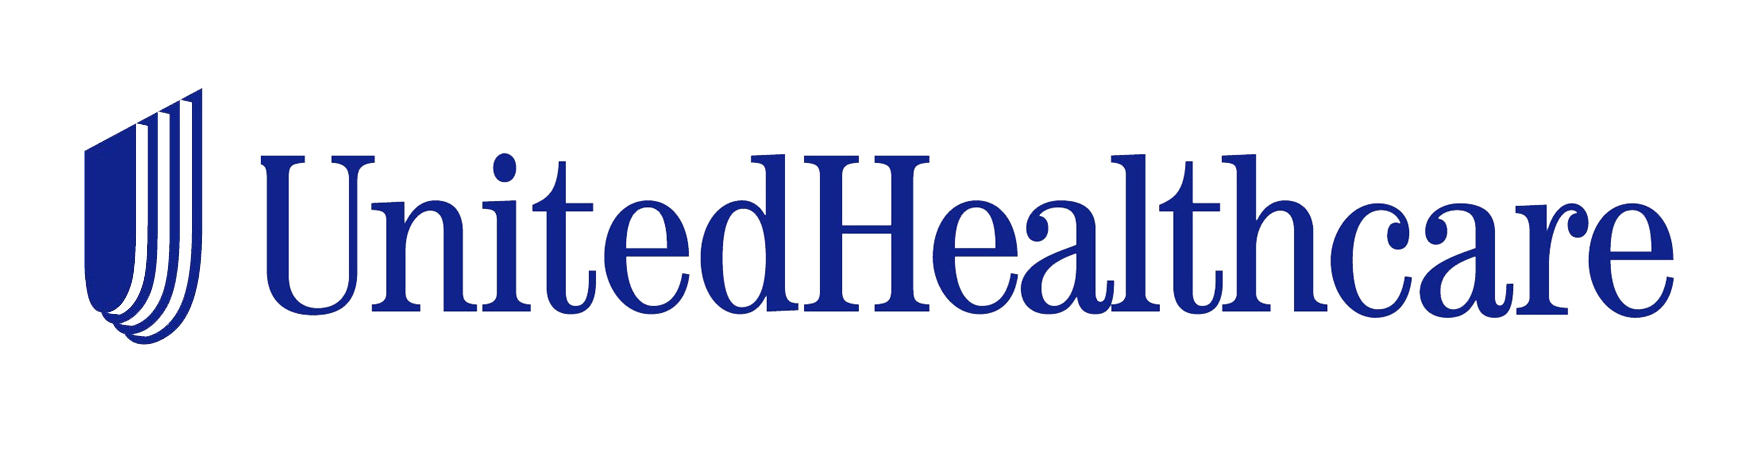 UnitedHealthcare Logo photo - 1